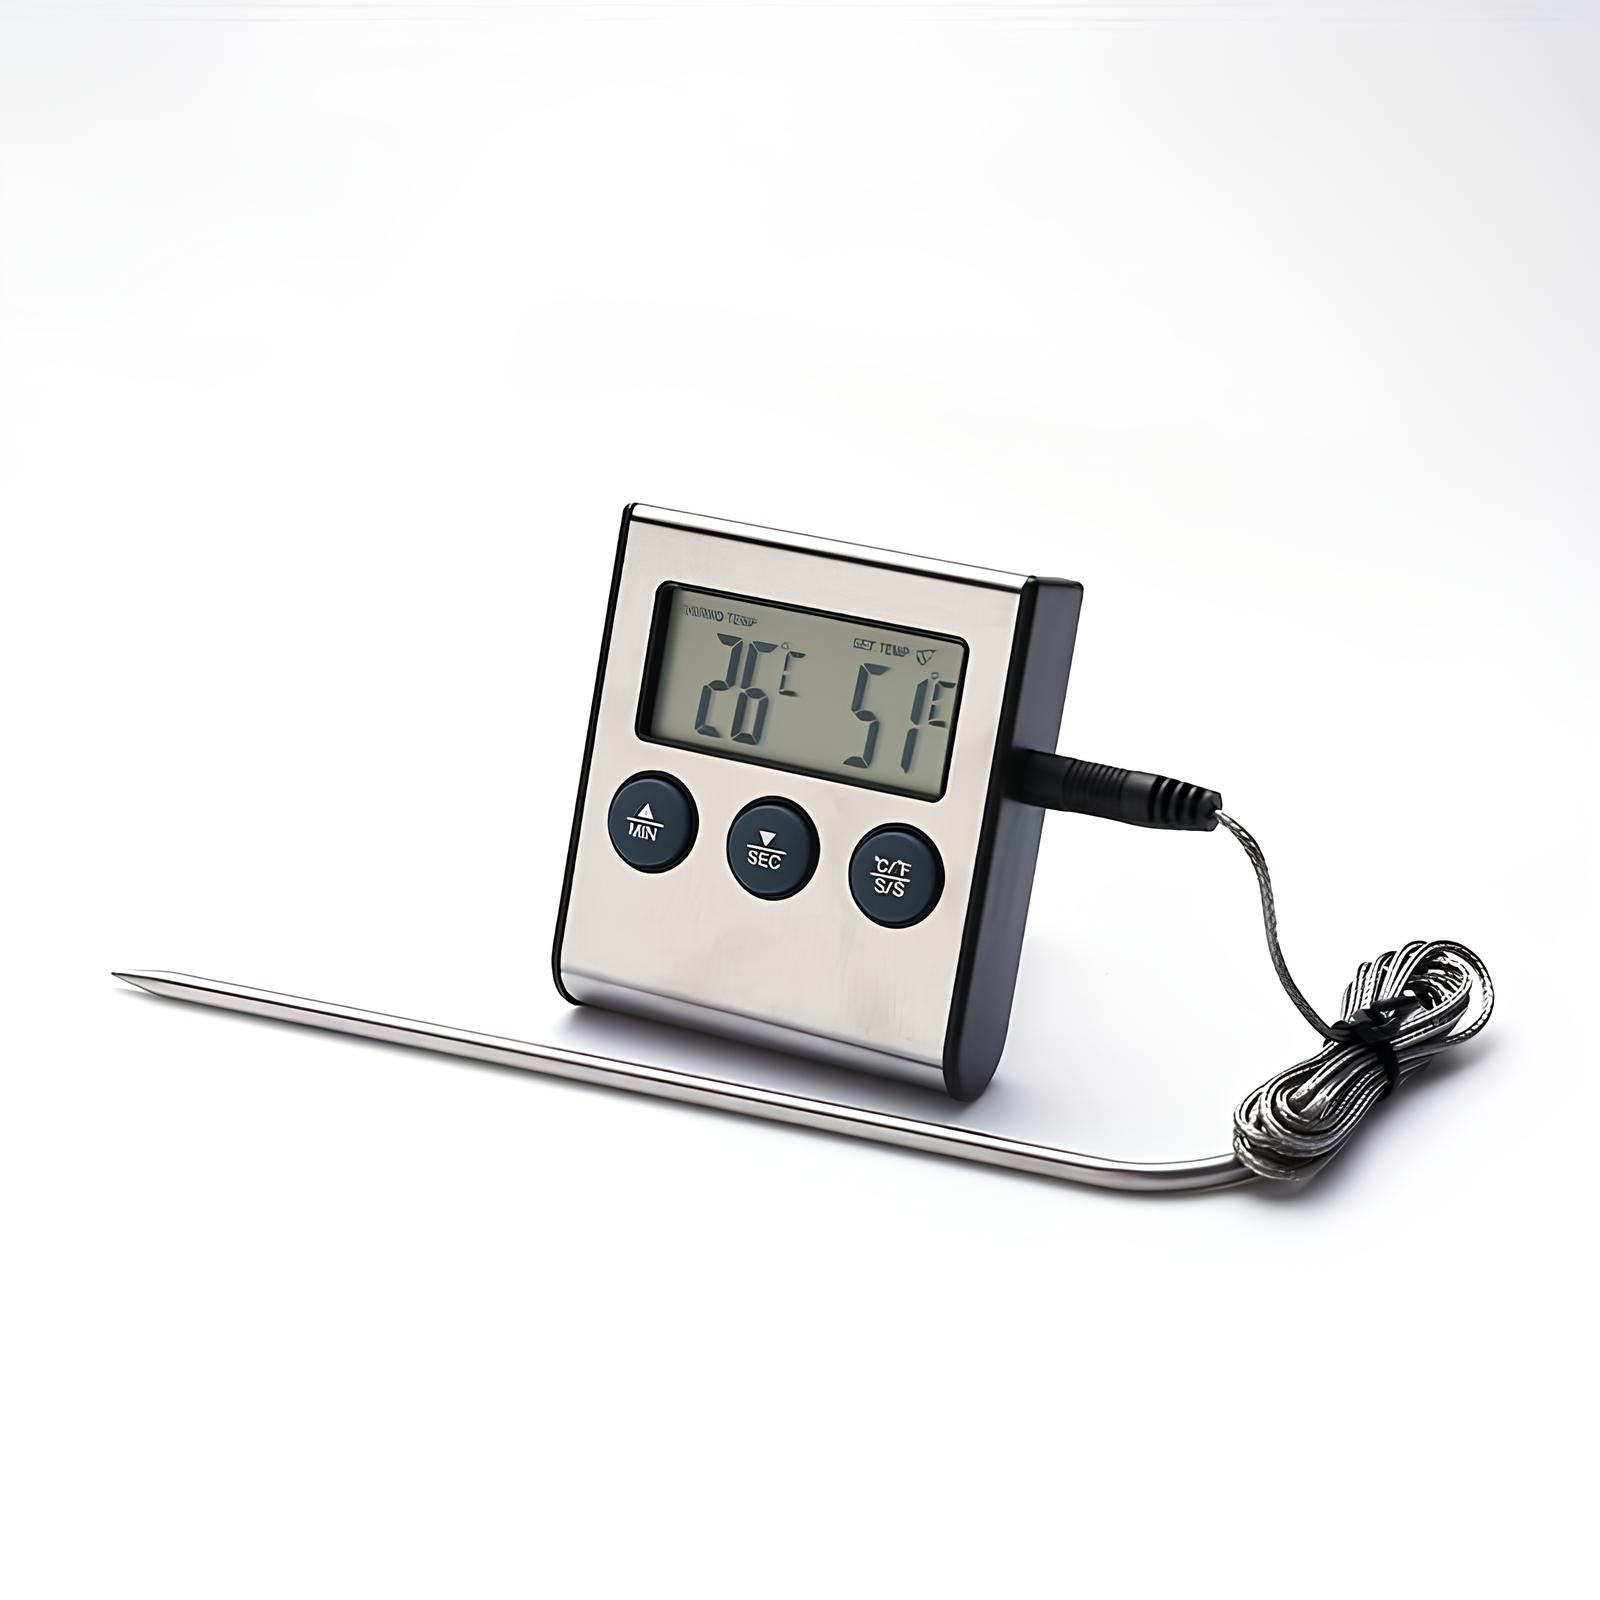 Thermomètre numérique avec minuterie - UstensilesCulinaires